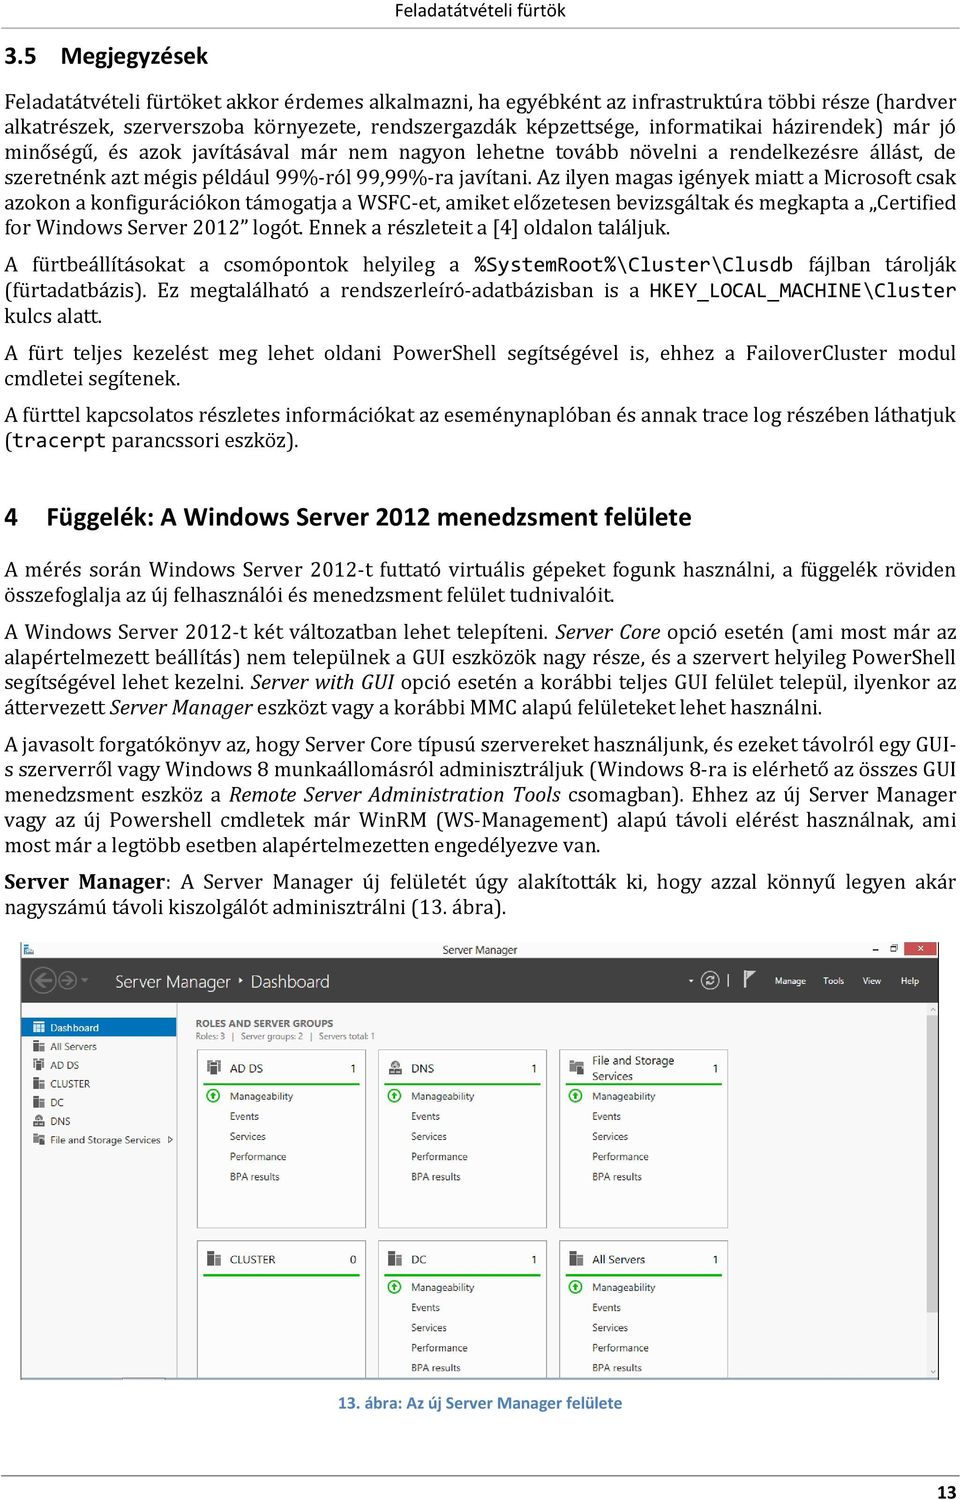 Az ilyen magas igények miatt a Microsoft csak azokon a konfigurációkon támogatja a WSFC-et, amiket előzetesen bevizsgáltak és megkapta a Certified for Windows Server 2012 logót.